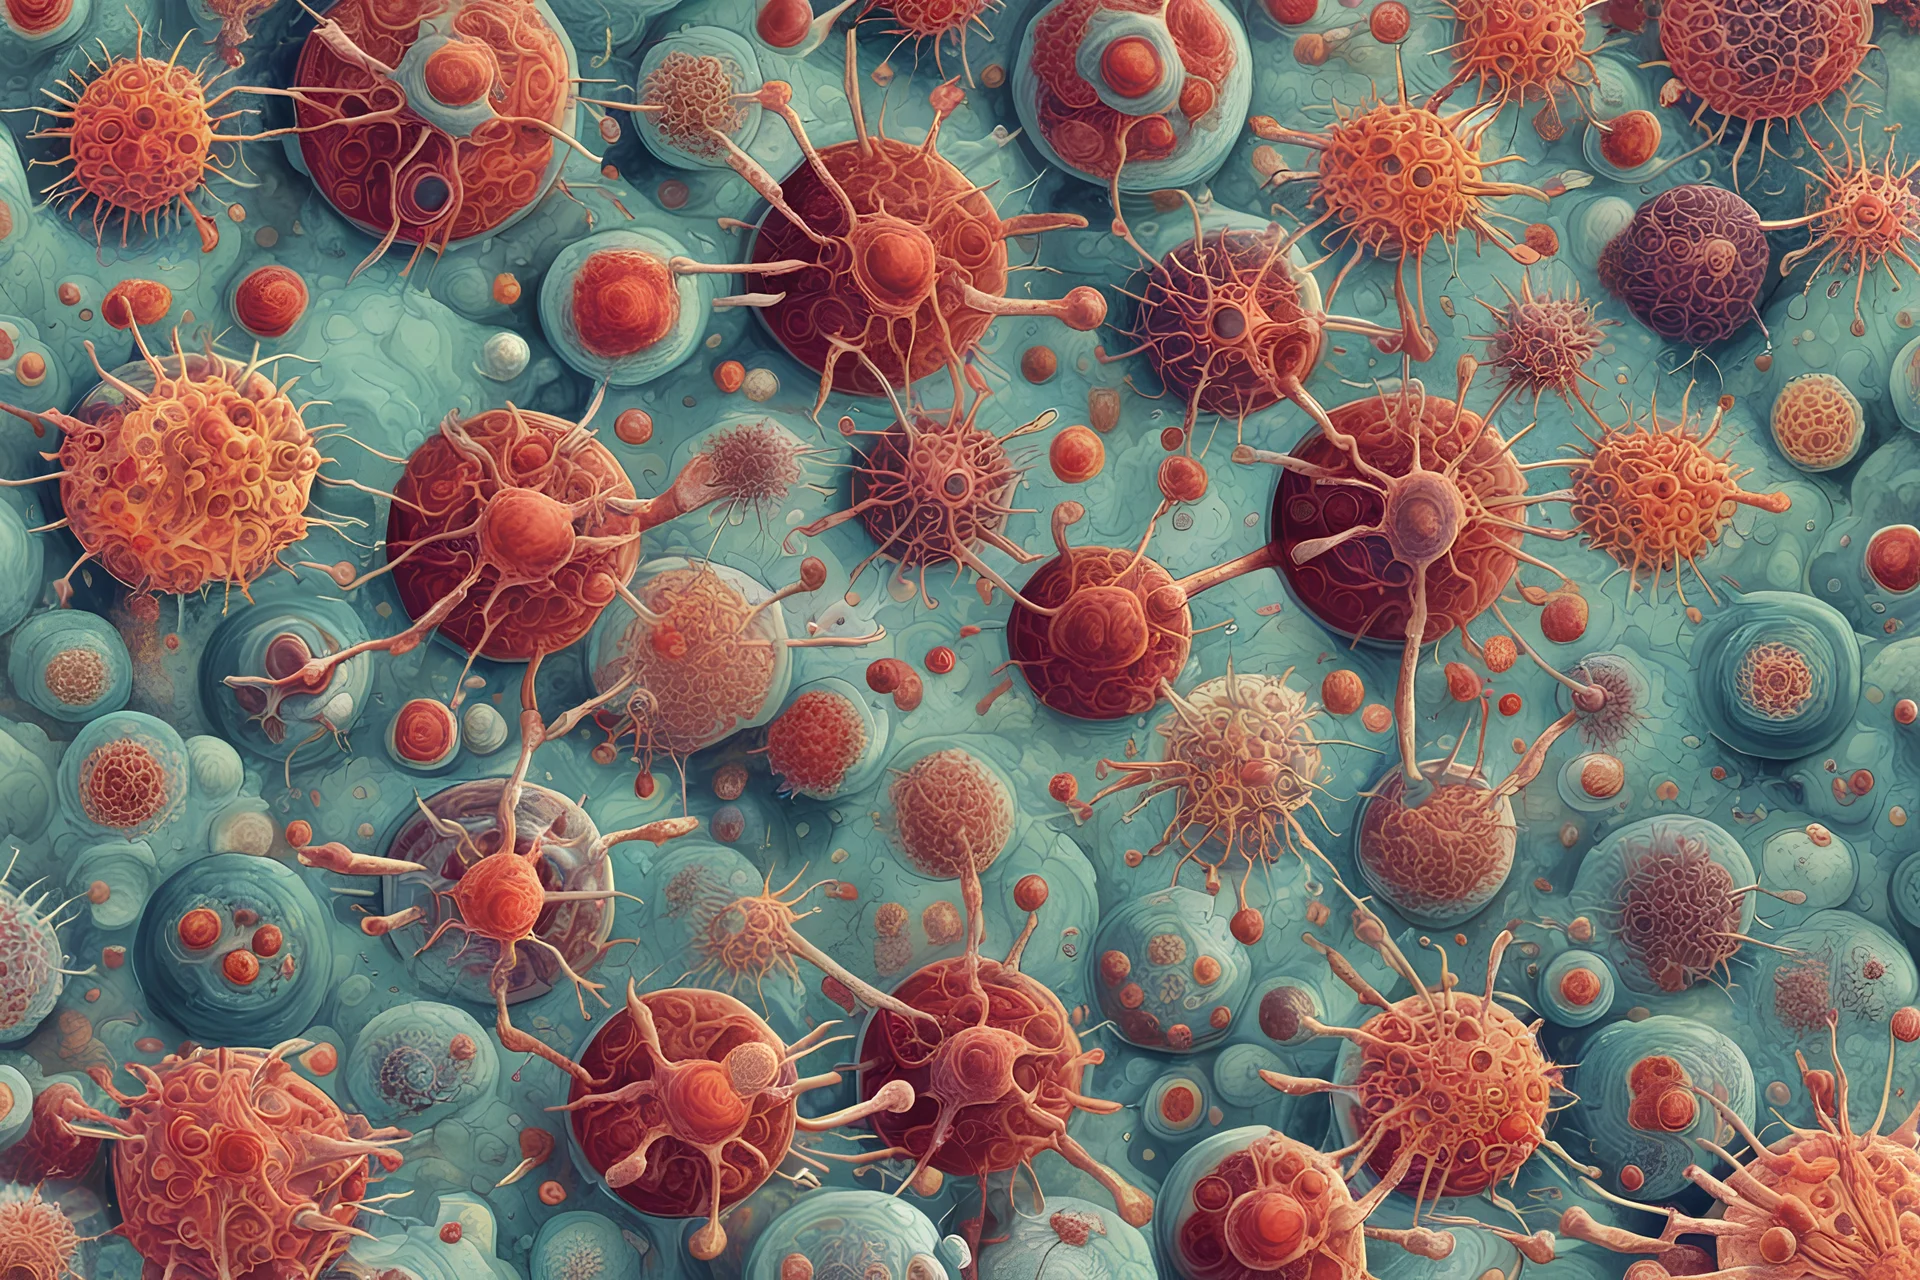 Viruses and diseases